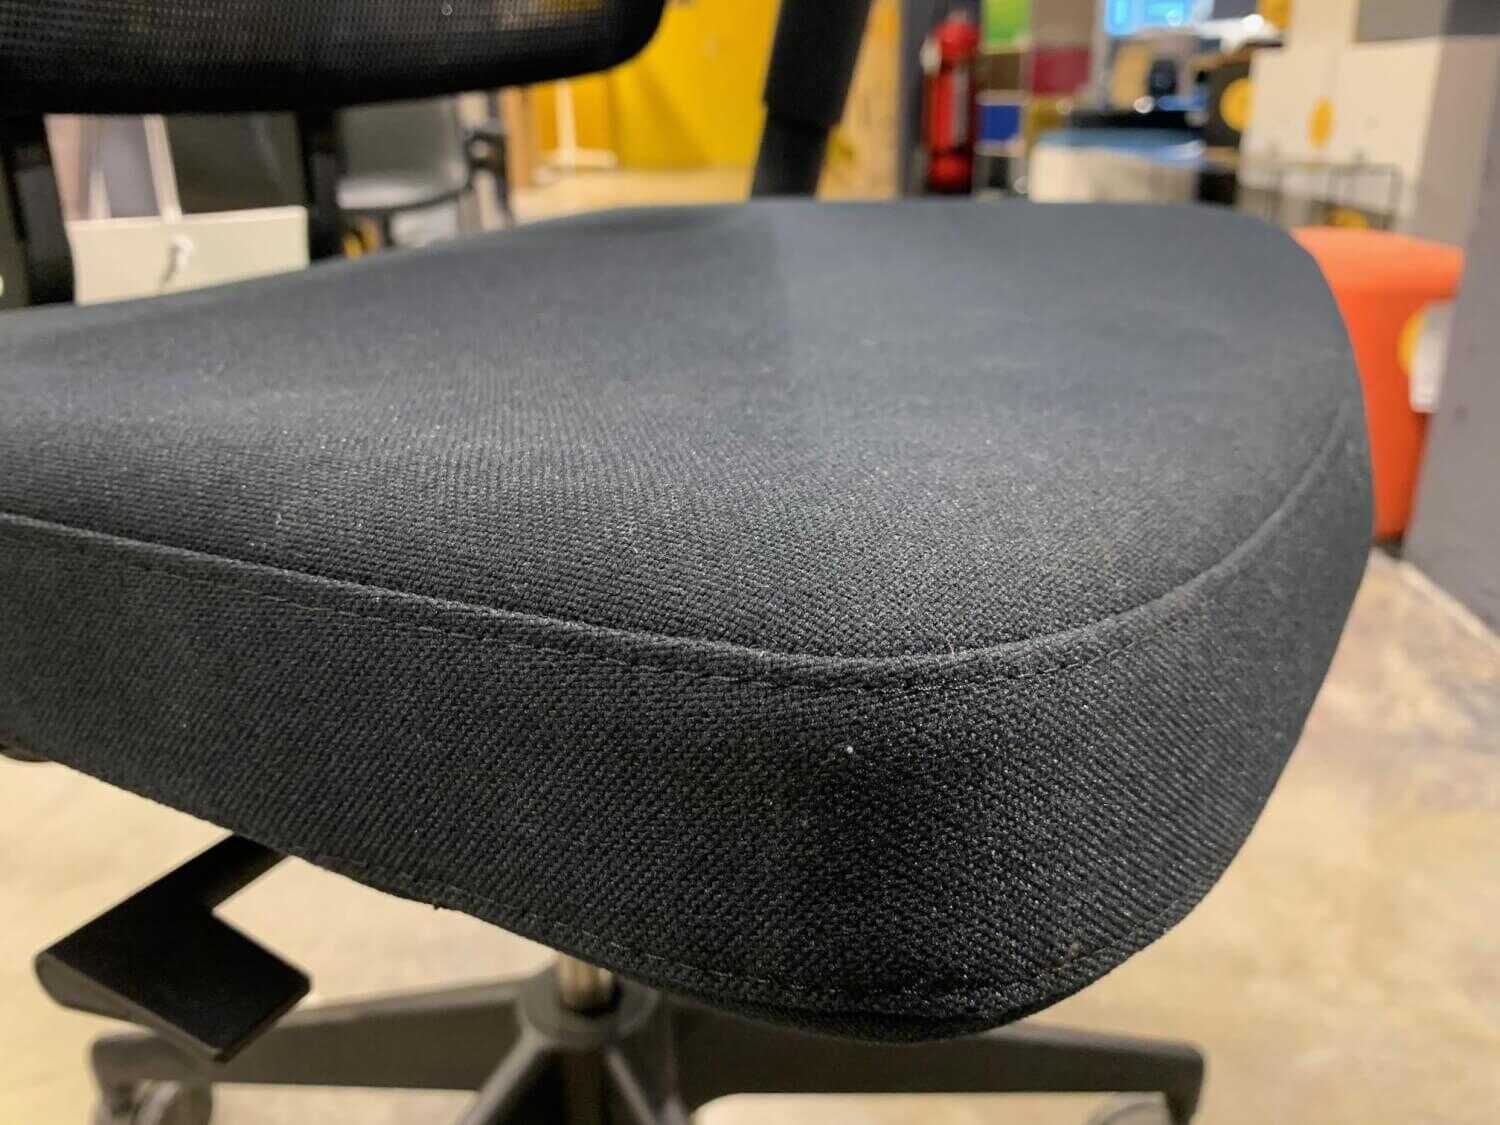 Drehstuhl AM Chair Netzrücken Plano Nero Gestell Kunststoff Tiefschwarz mit 3D-Armlehnen